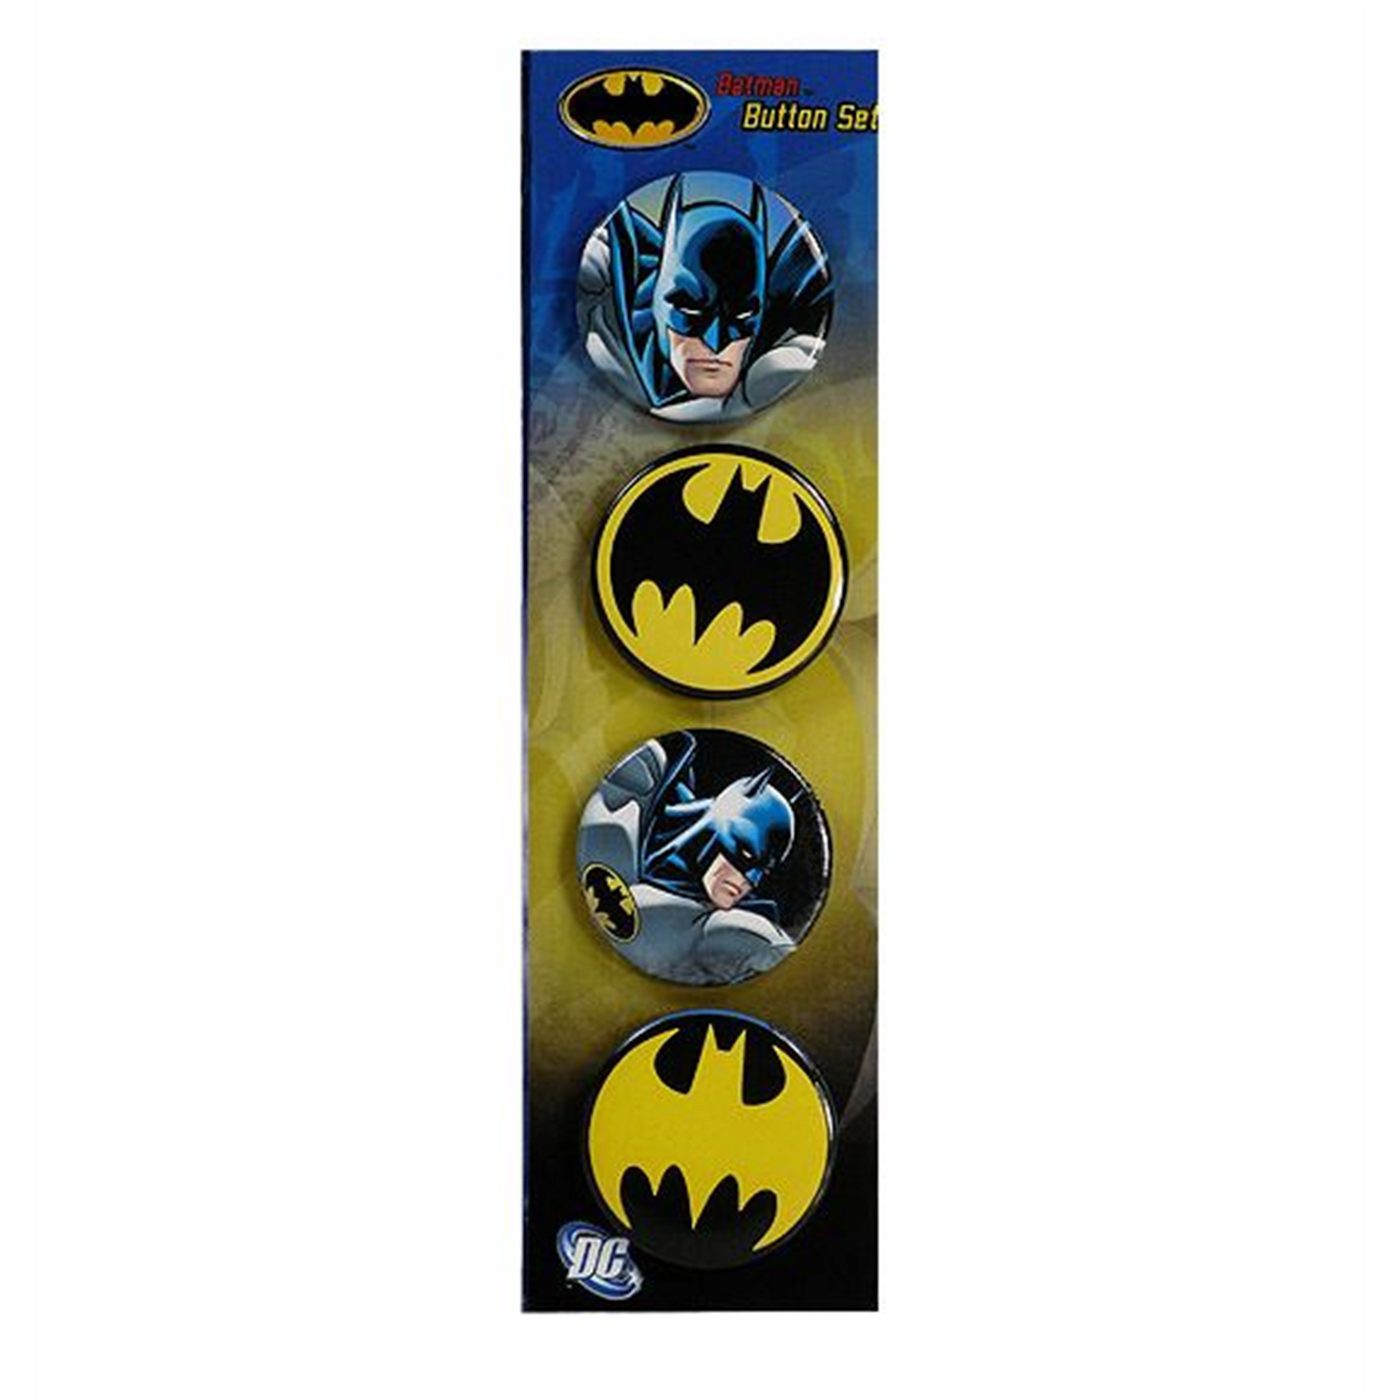 Batman Images And Symbols Button Set